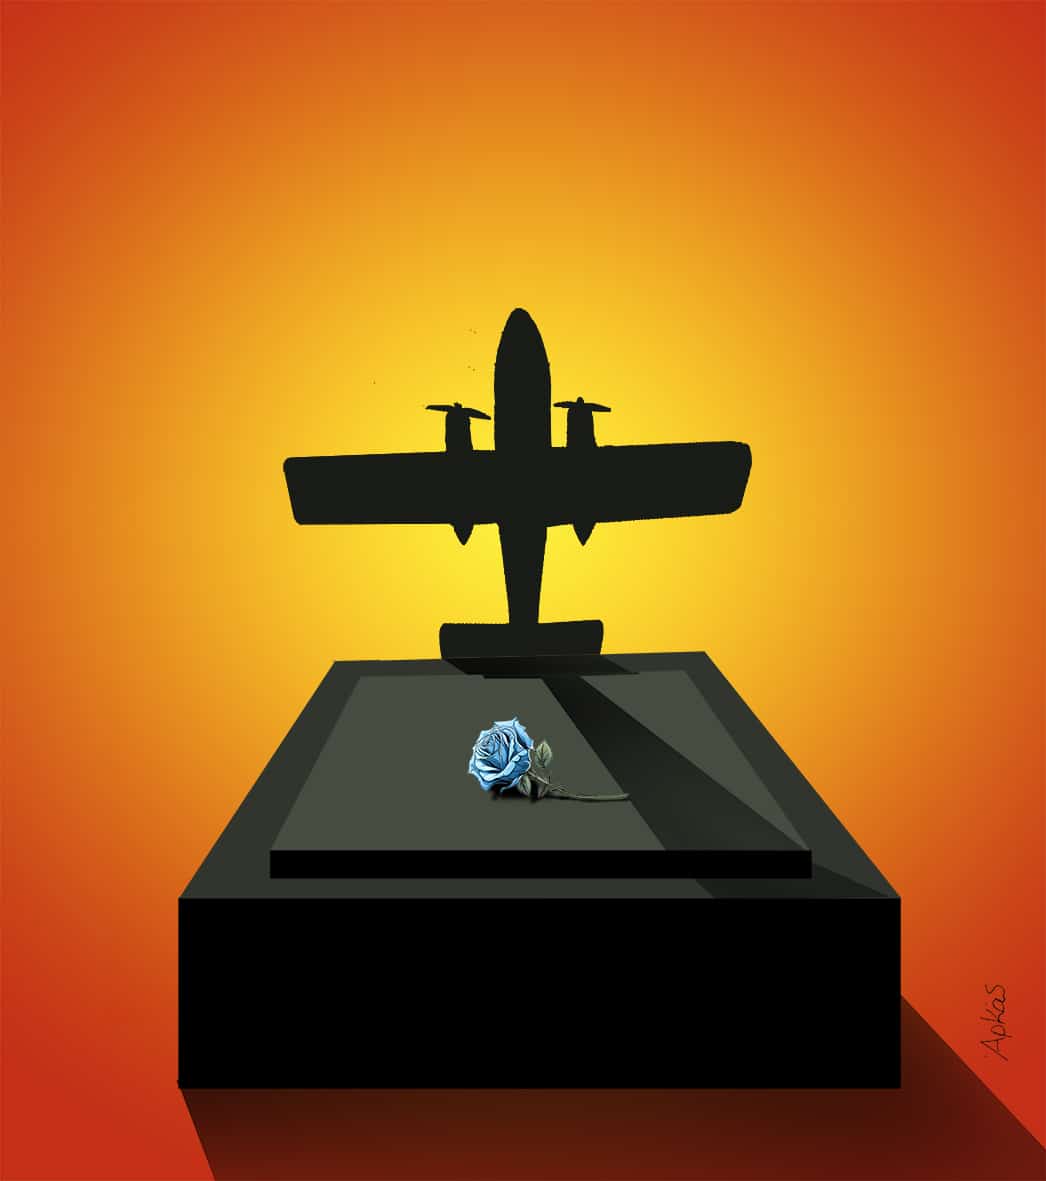 Δεν υπάρχουν λόγια: Το συγκλονιστικό σκίτσο του Αρκά για τους πιλότους που έχασαν τη ζωή τους με τη συντριβή του  Canadair (Pic)